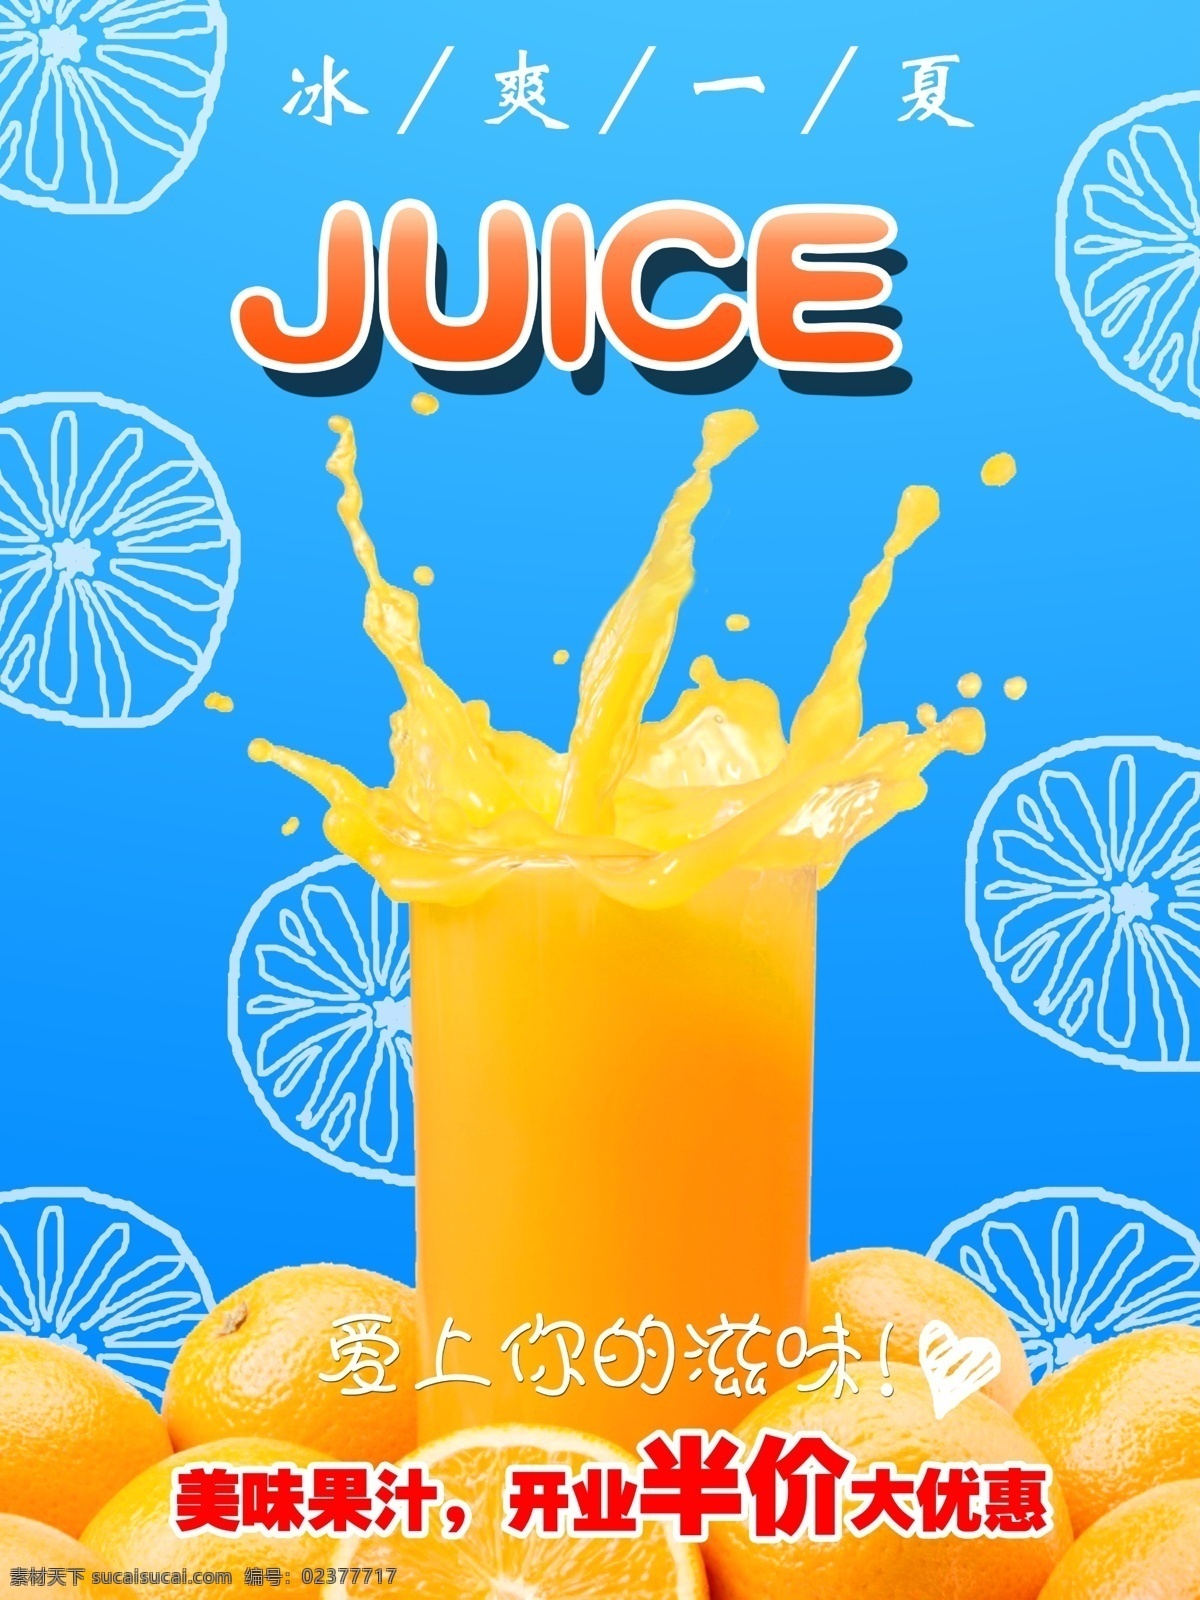 夏日 开业 特价 果汁 优惠 橙子 手绘 冰爽 蓝色 橙色 迸溅 可编辑